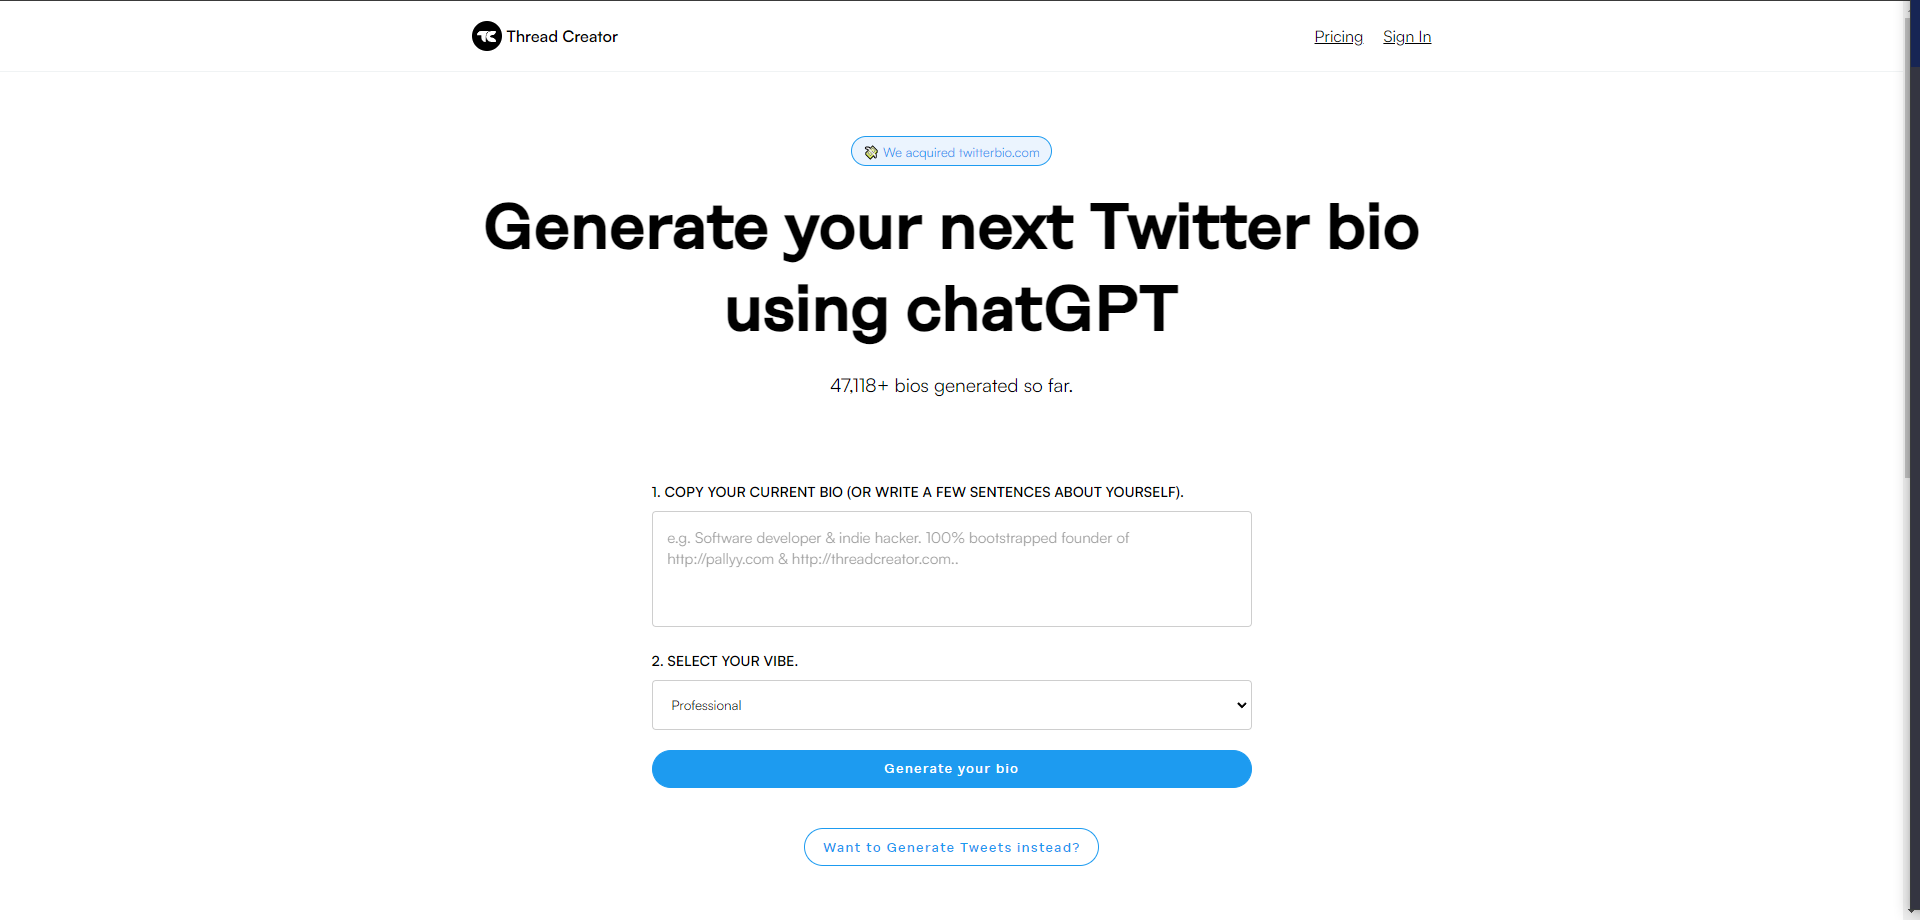 The Twitter Bio Generator